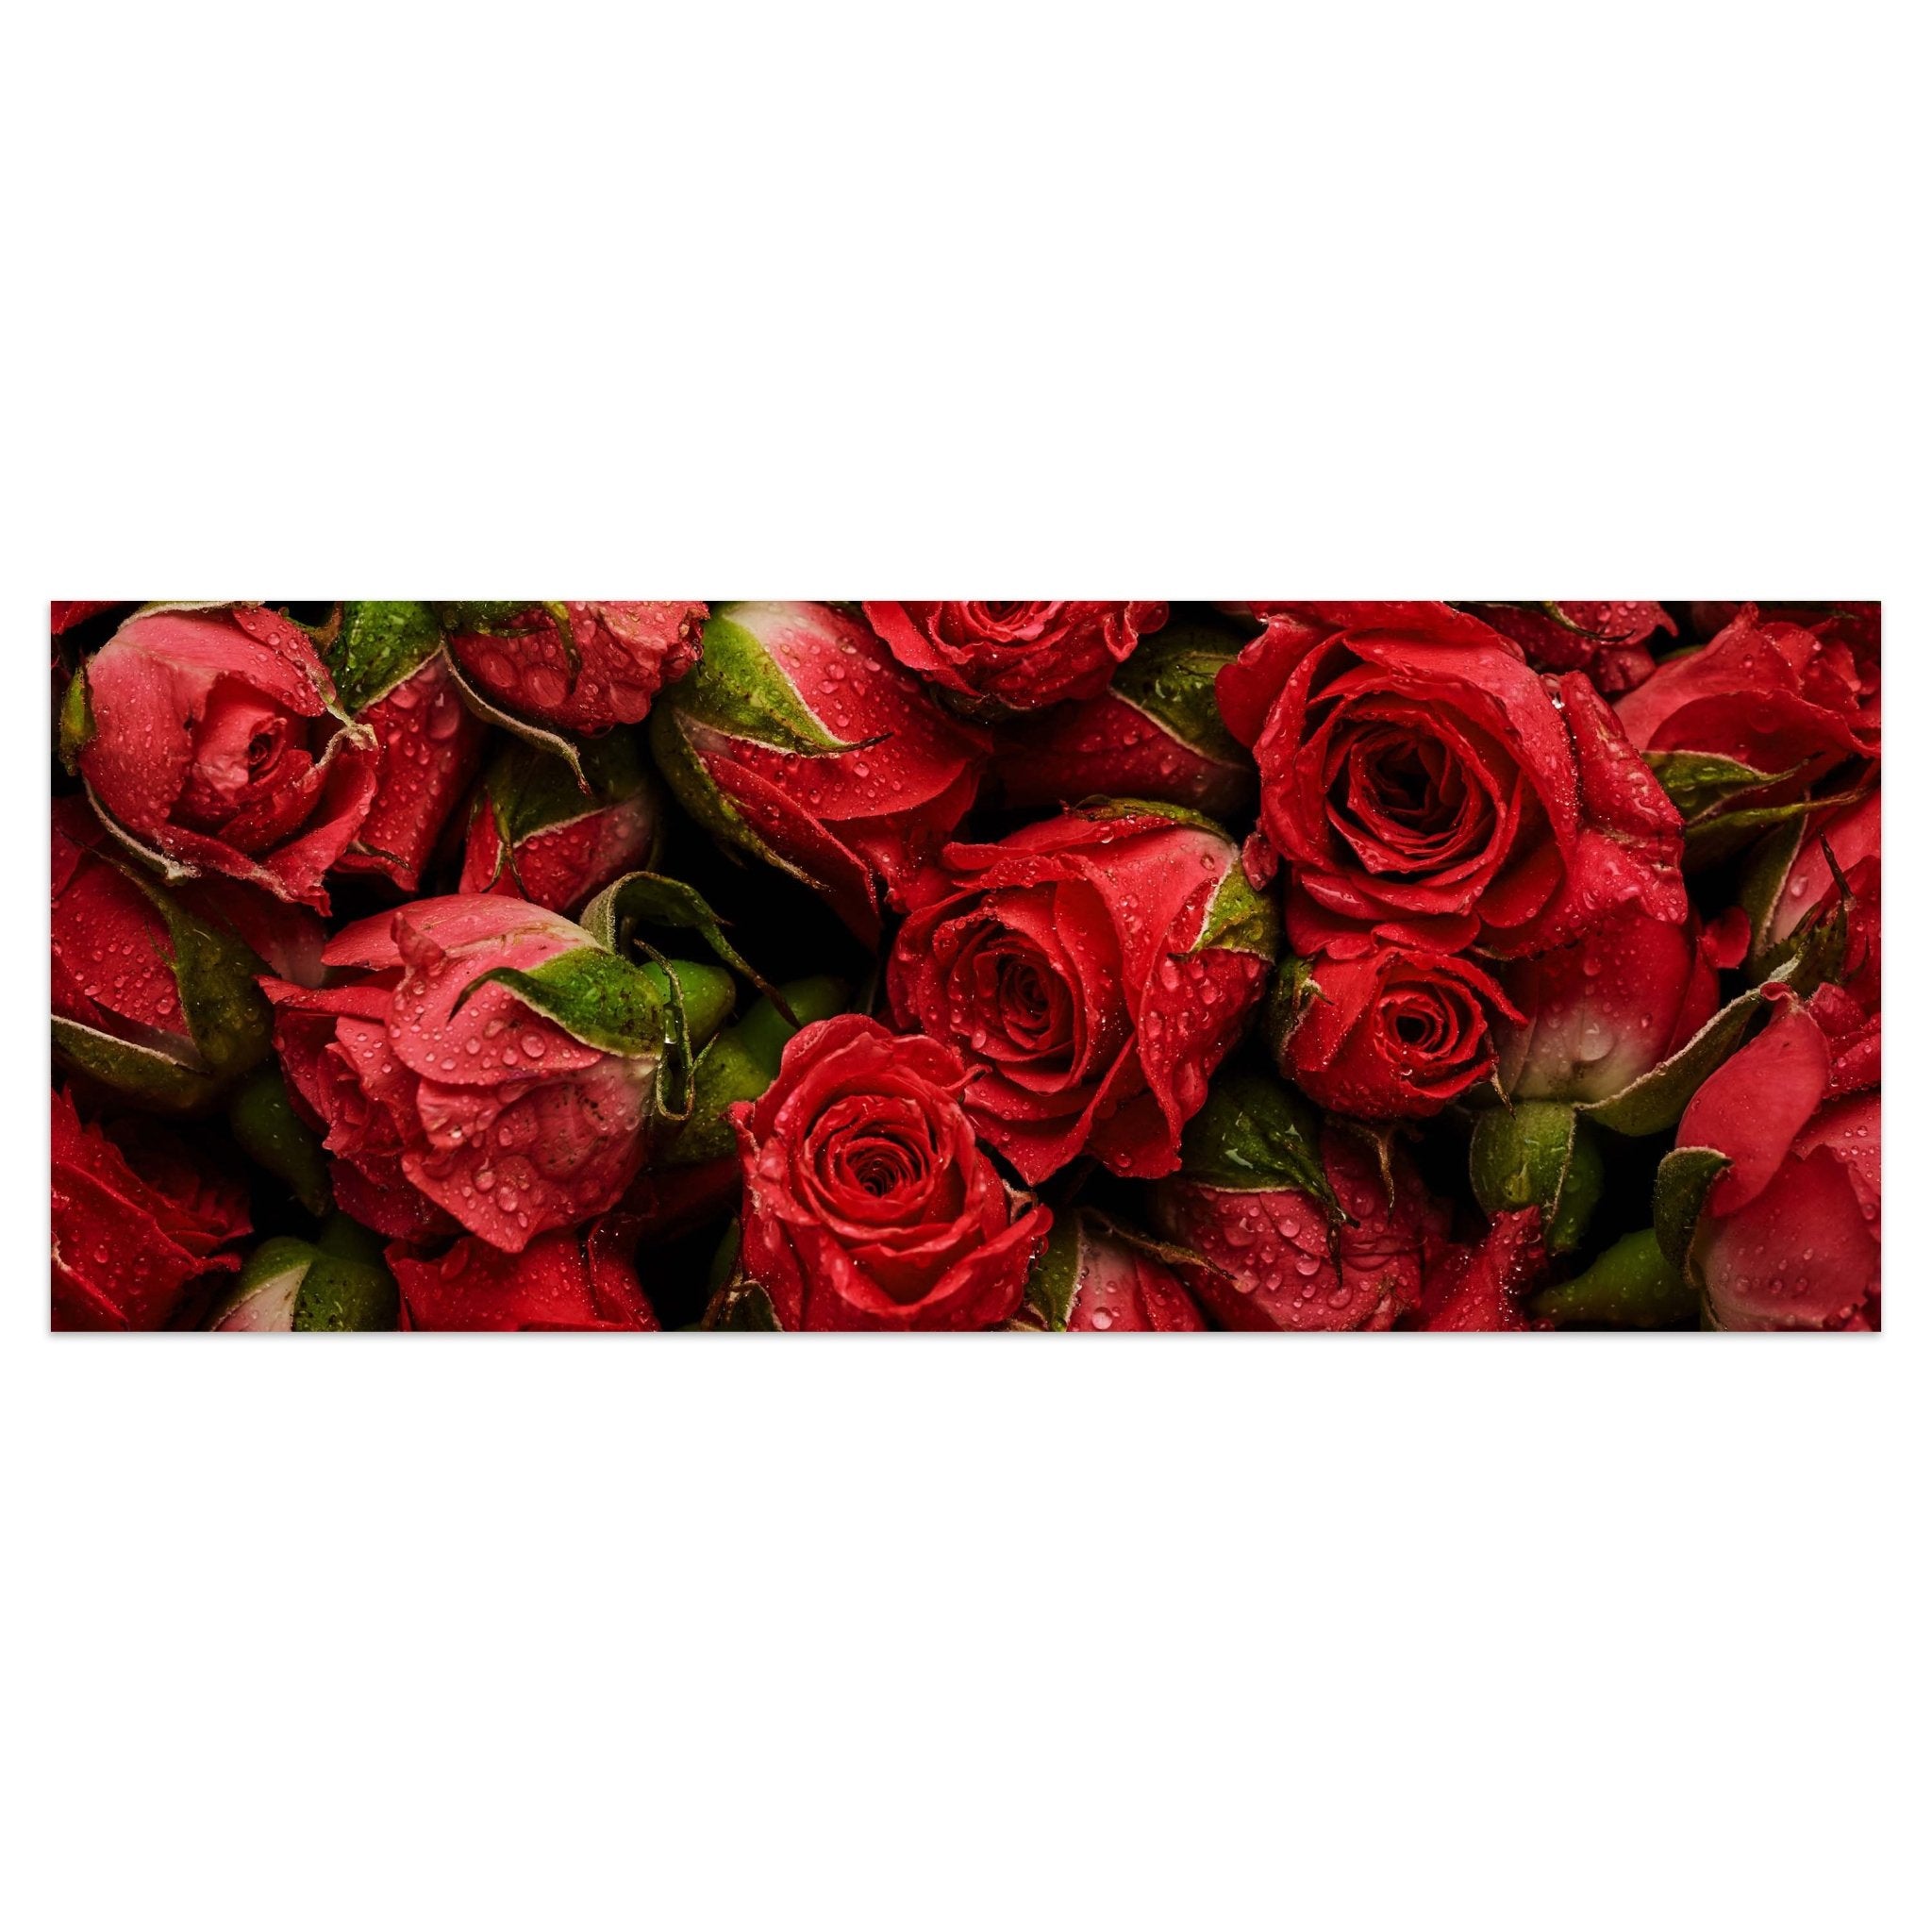 Leinwandbild rote Rosen Blüten M1123 kaufen - Bild 1